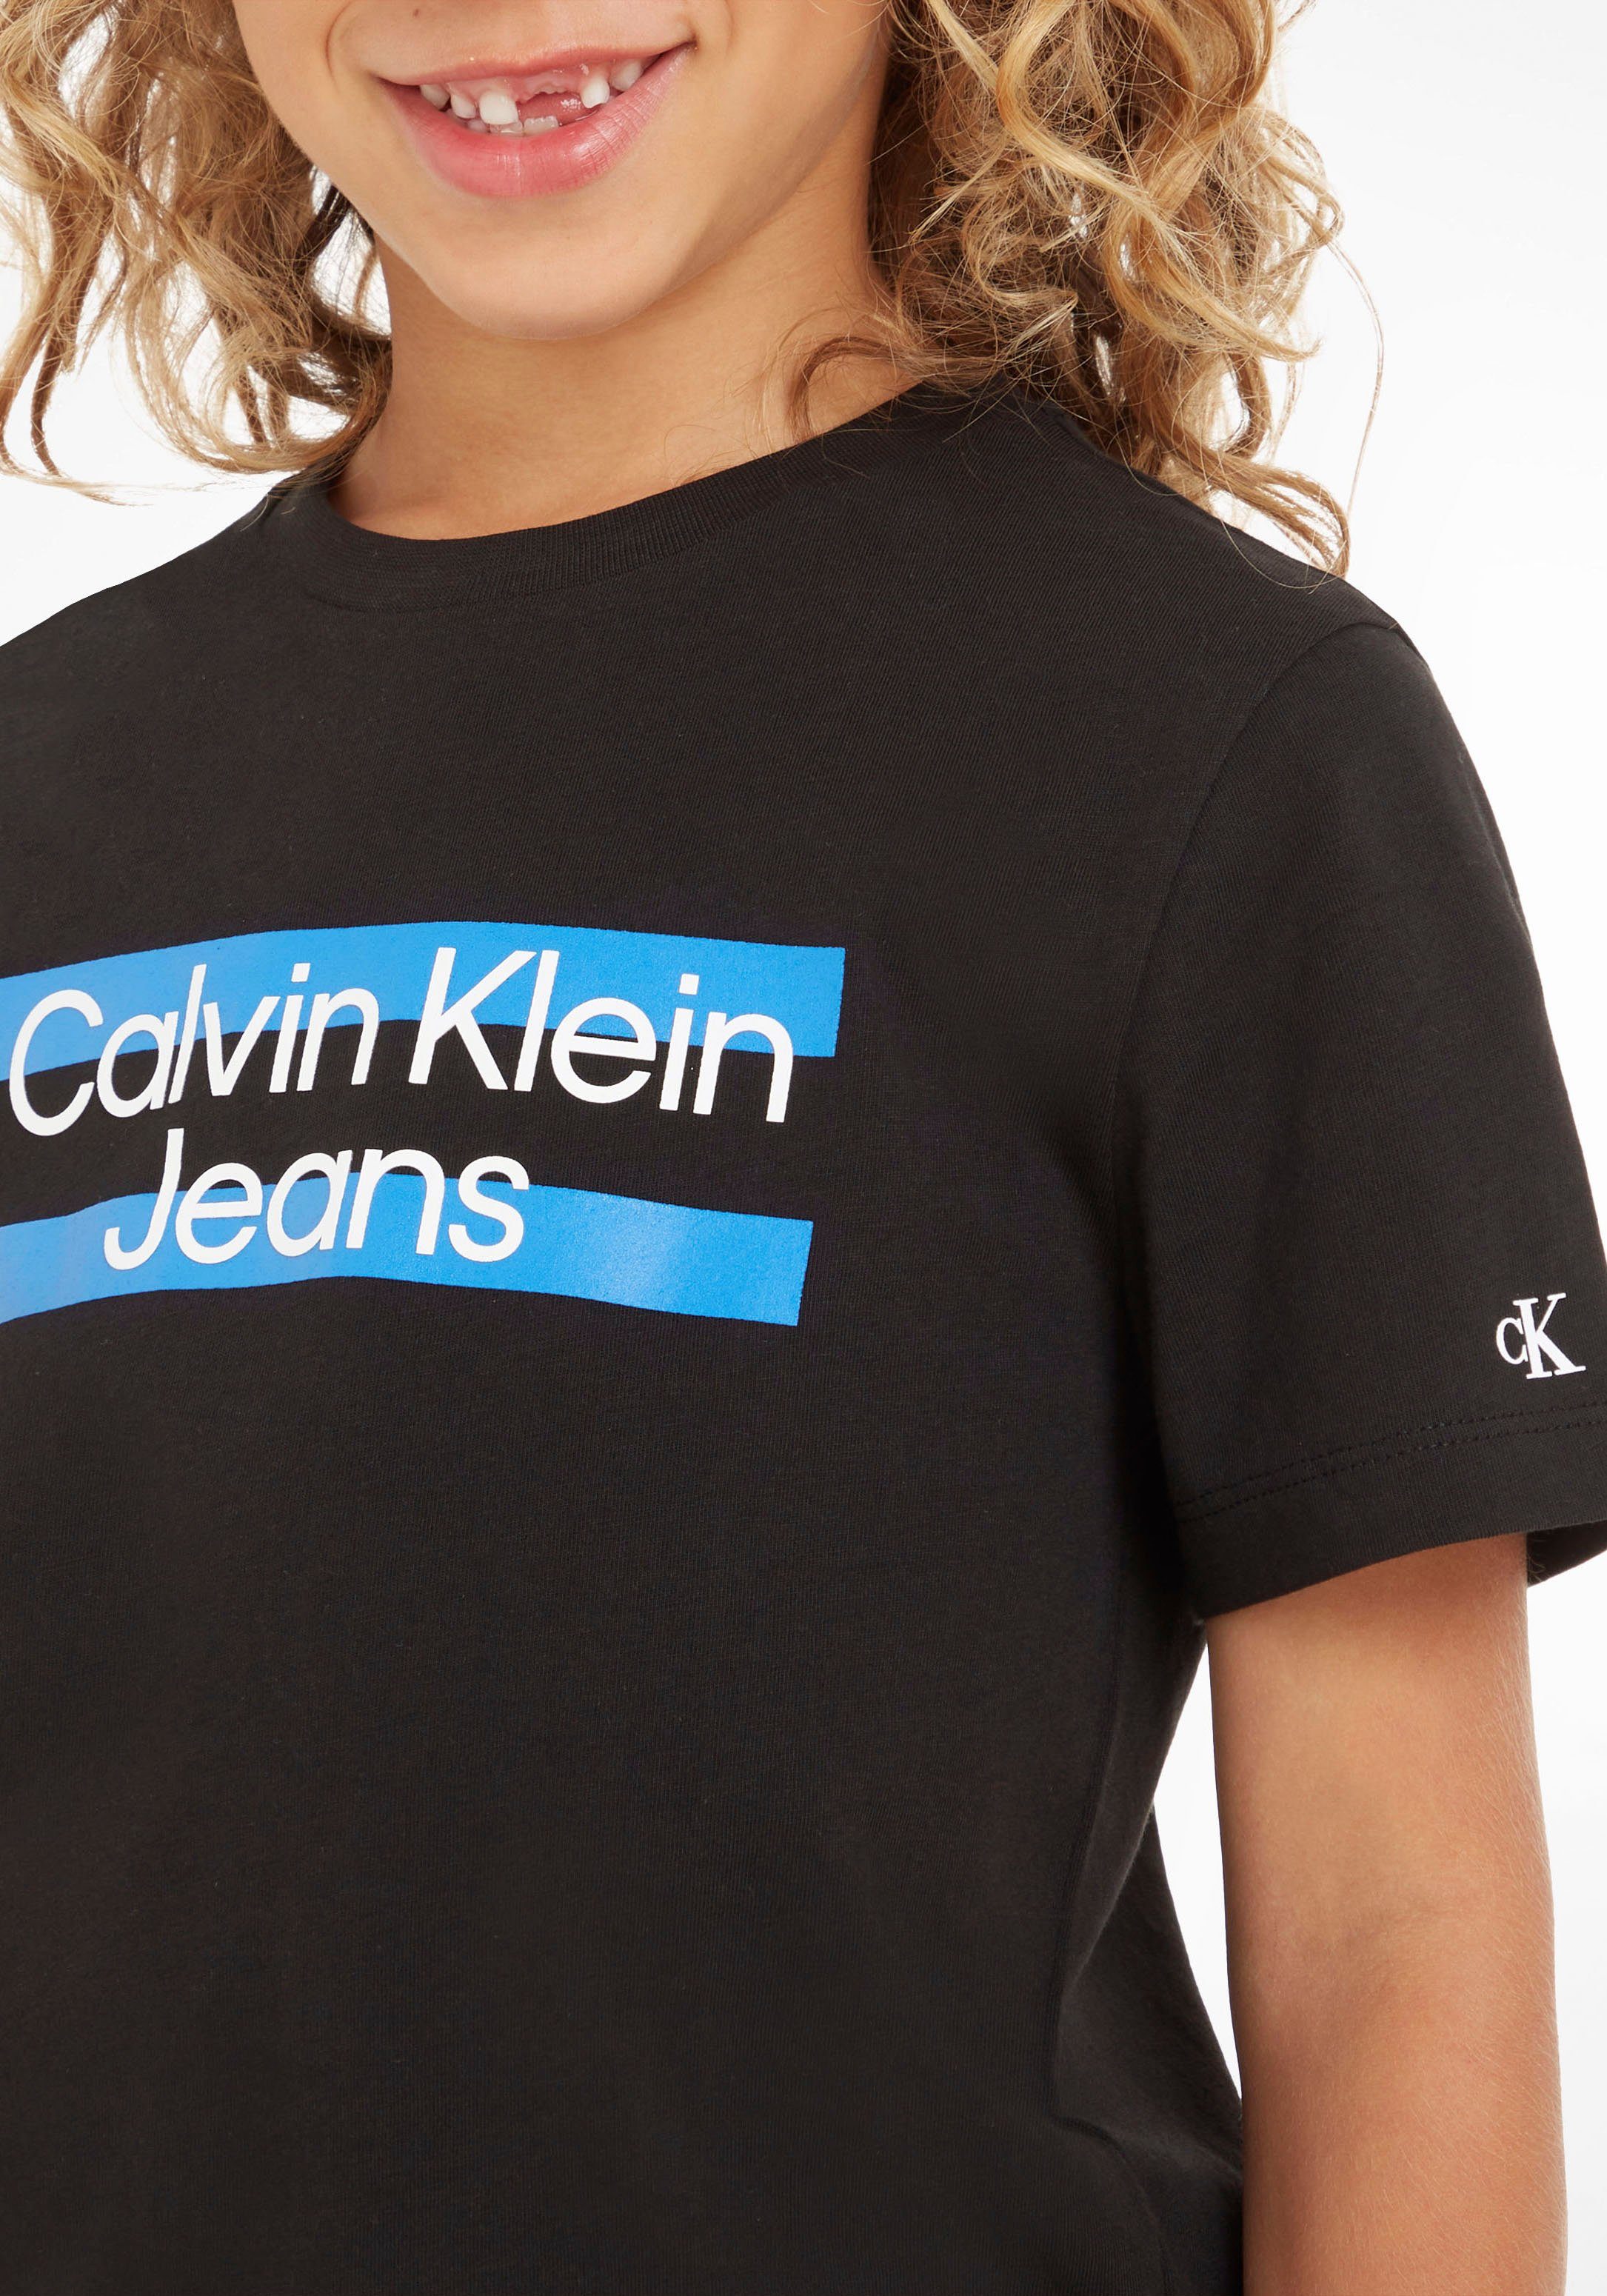 T-Shirt auf Brust Klein Calvin mit Jeans Klein der Calvin Logodruck schwarz